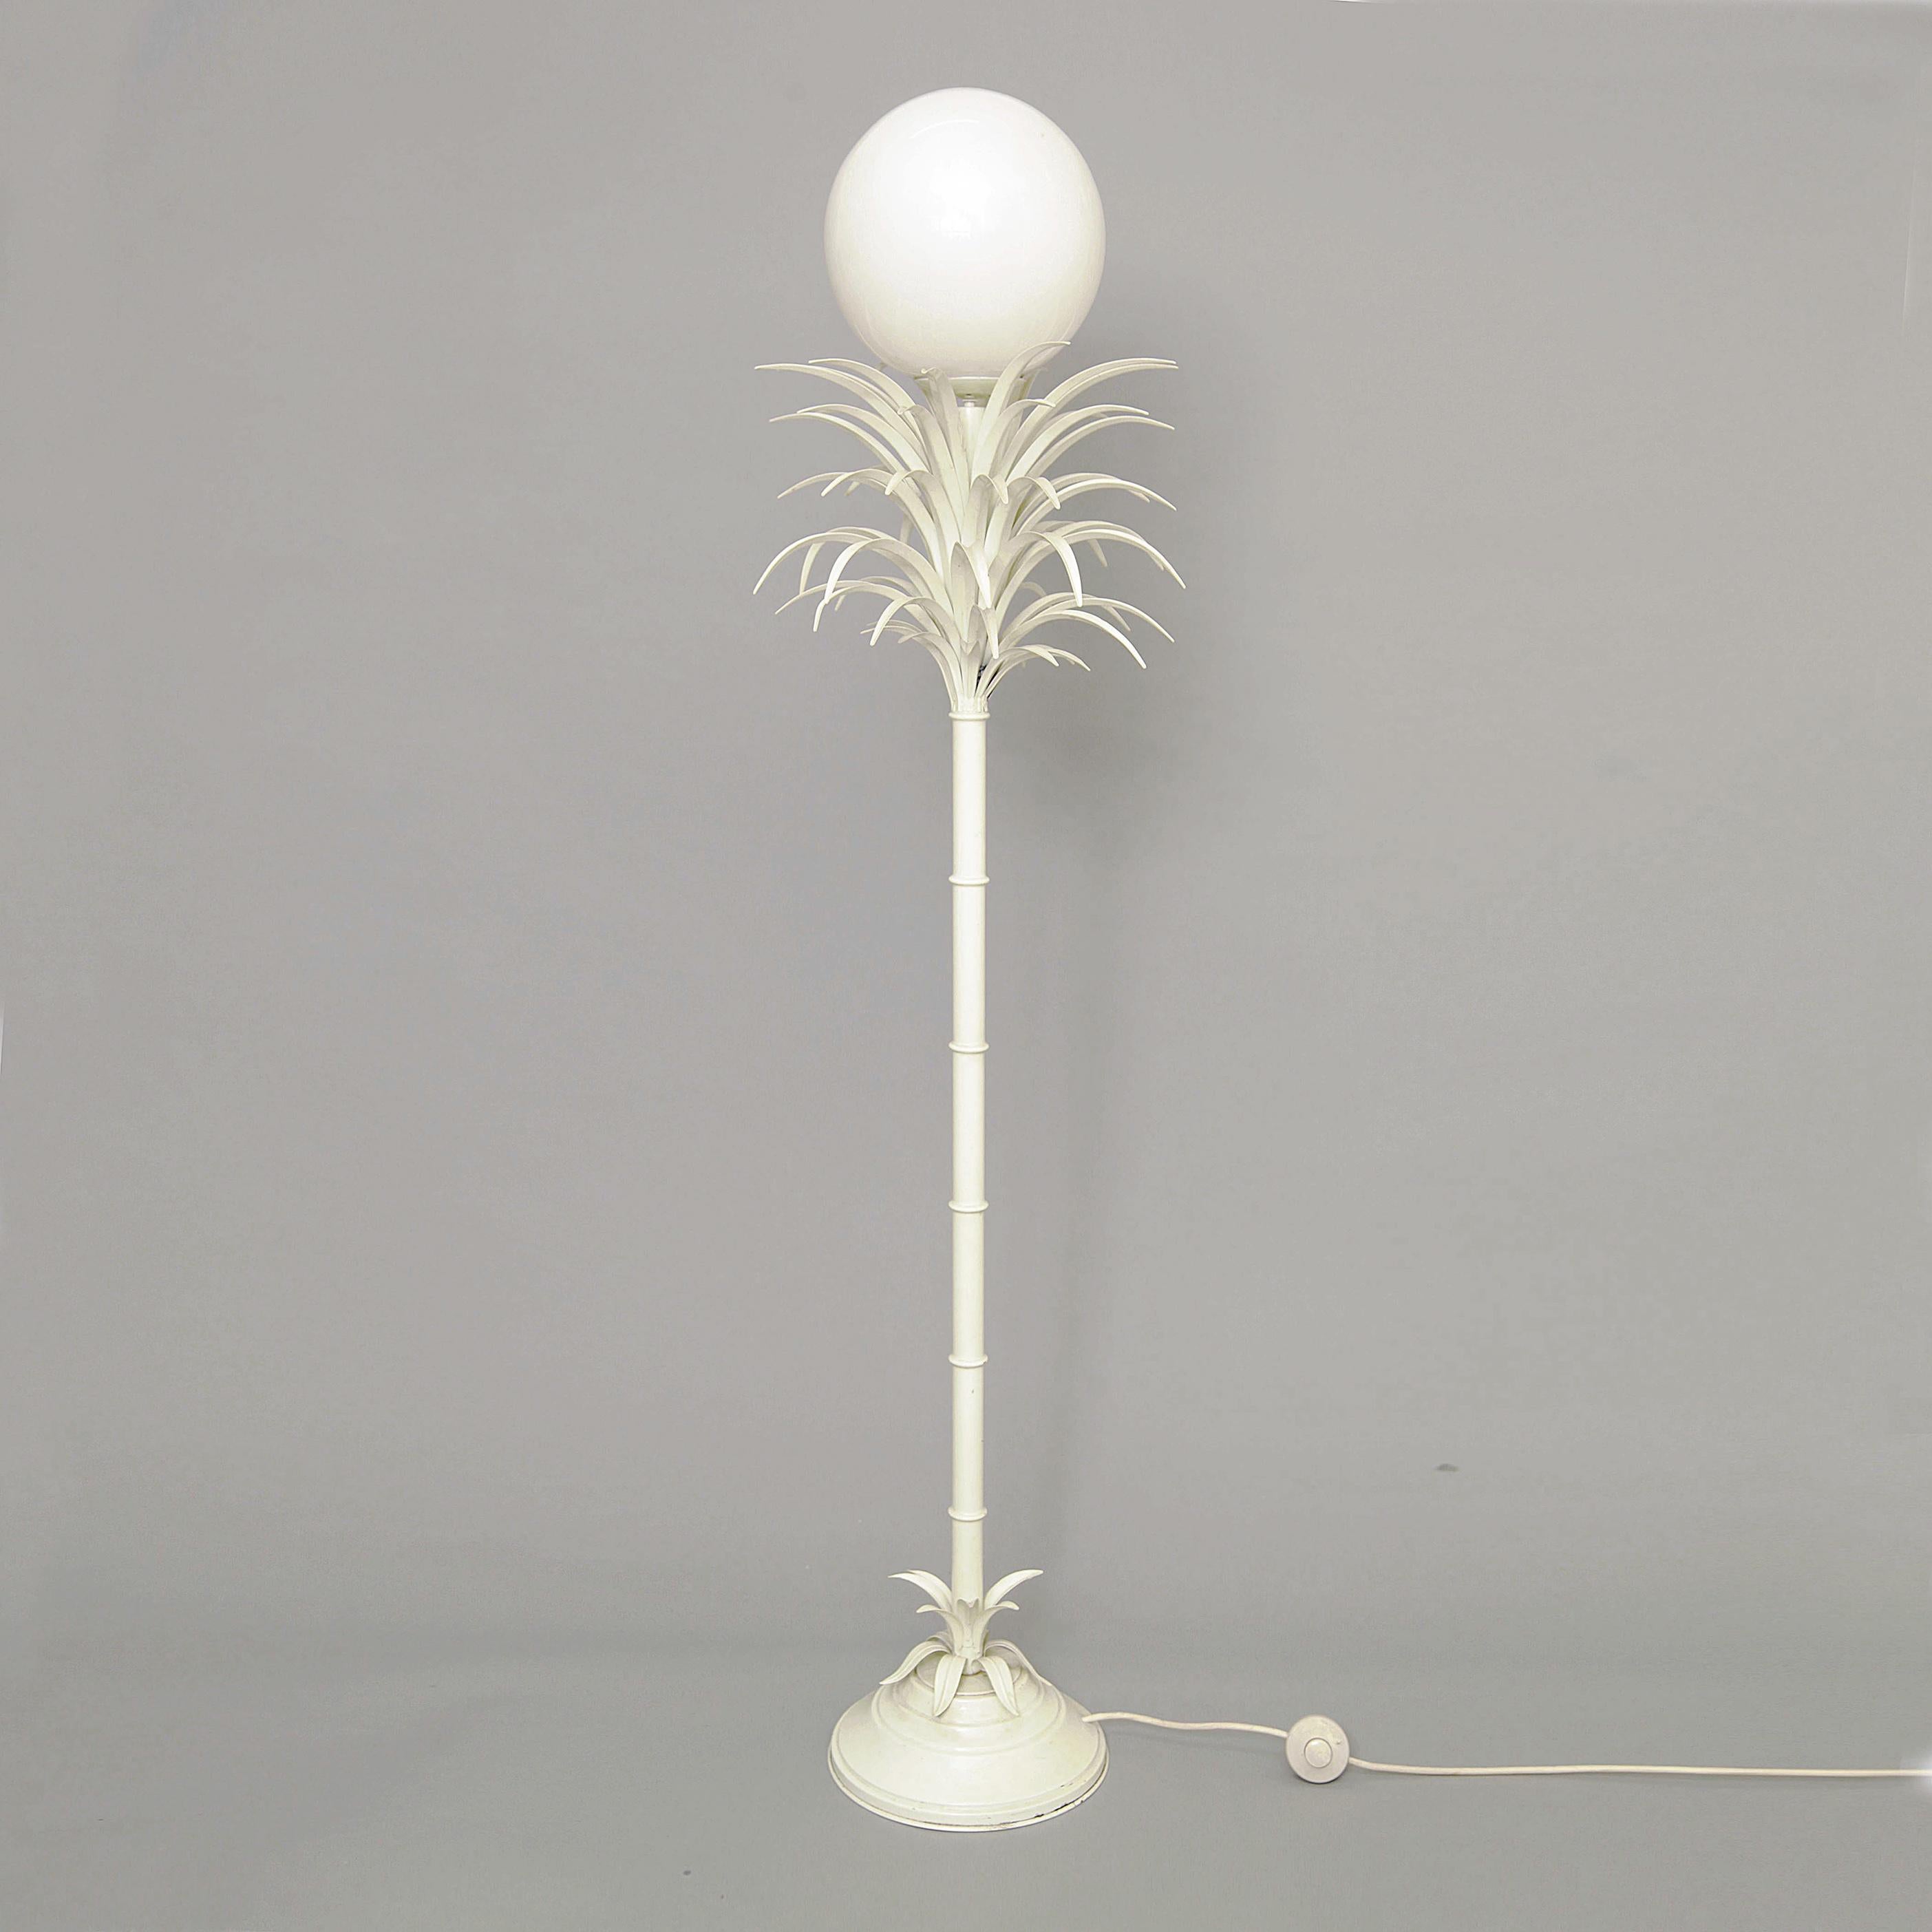 Von Sergio Terzani entworfene Stehlampe in Form einer Palme, später weiß lackiert und mit einer Glaskugel als Schirm. Ausgezeichnete Qualität, aber mit altersbedingten Gebrauchsspuren.